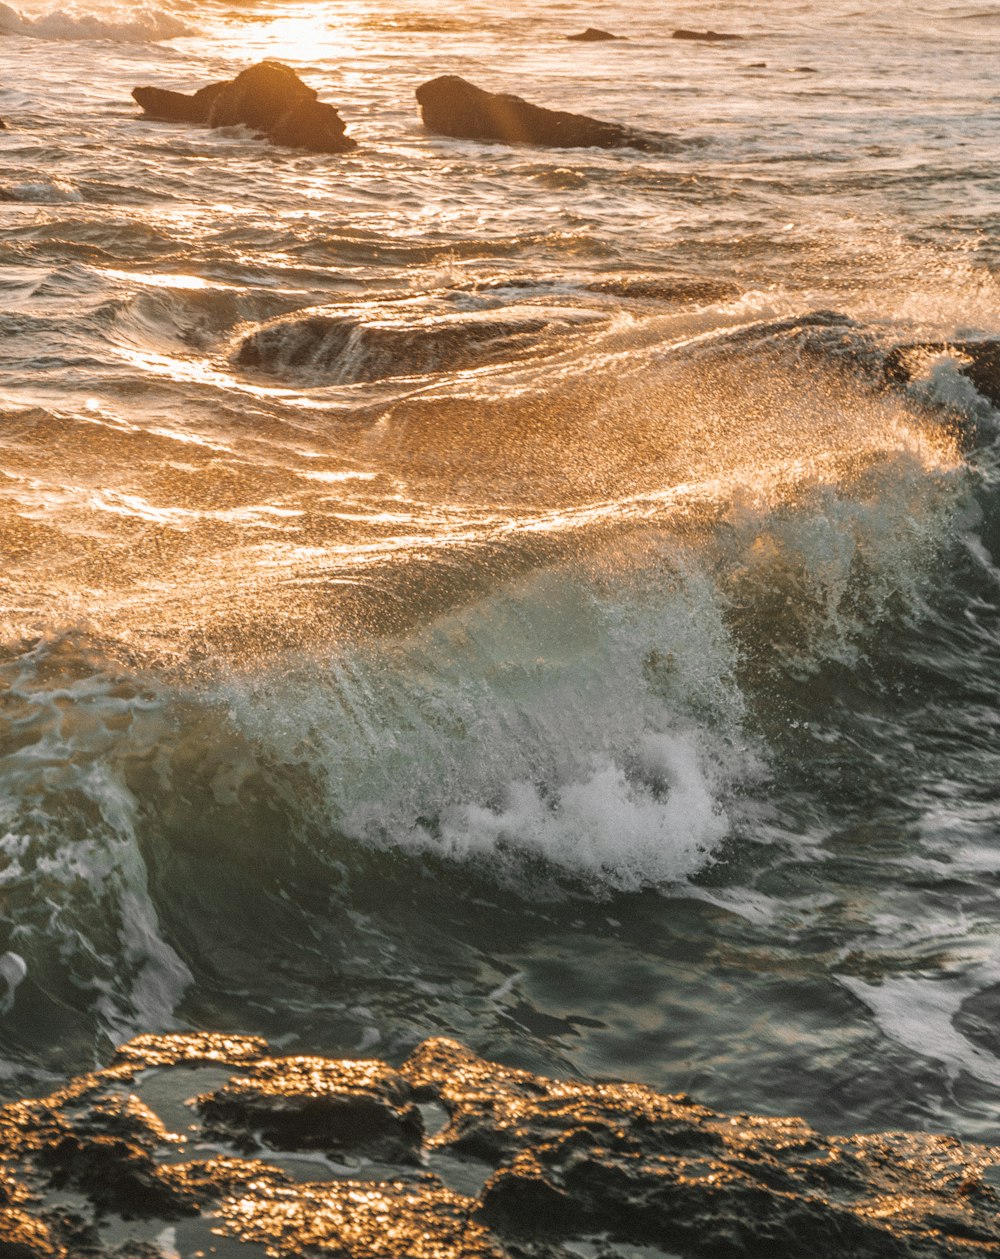 water waves hitting brown rocks during daytime